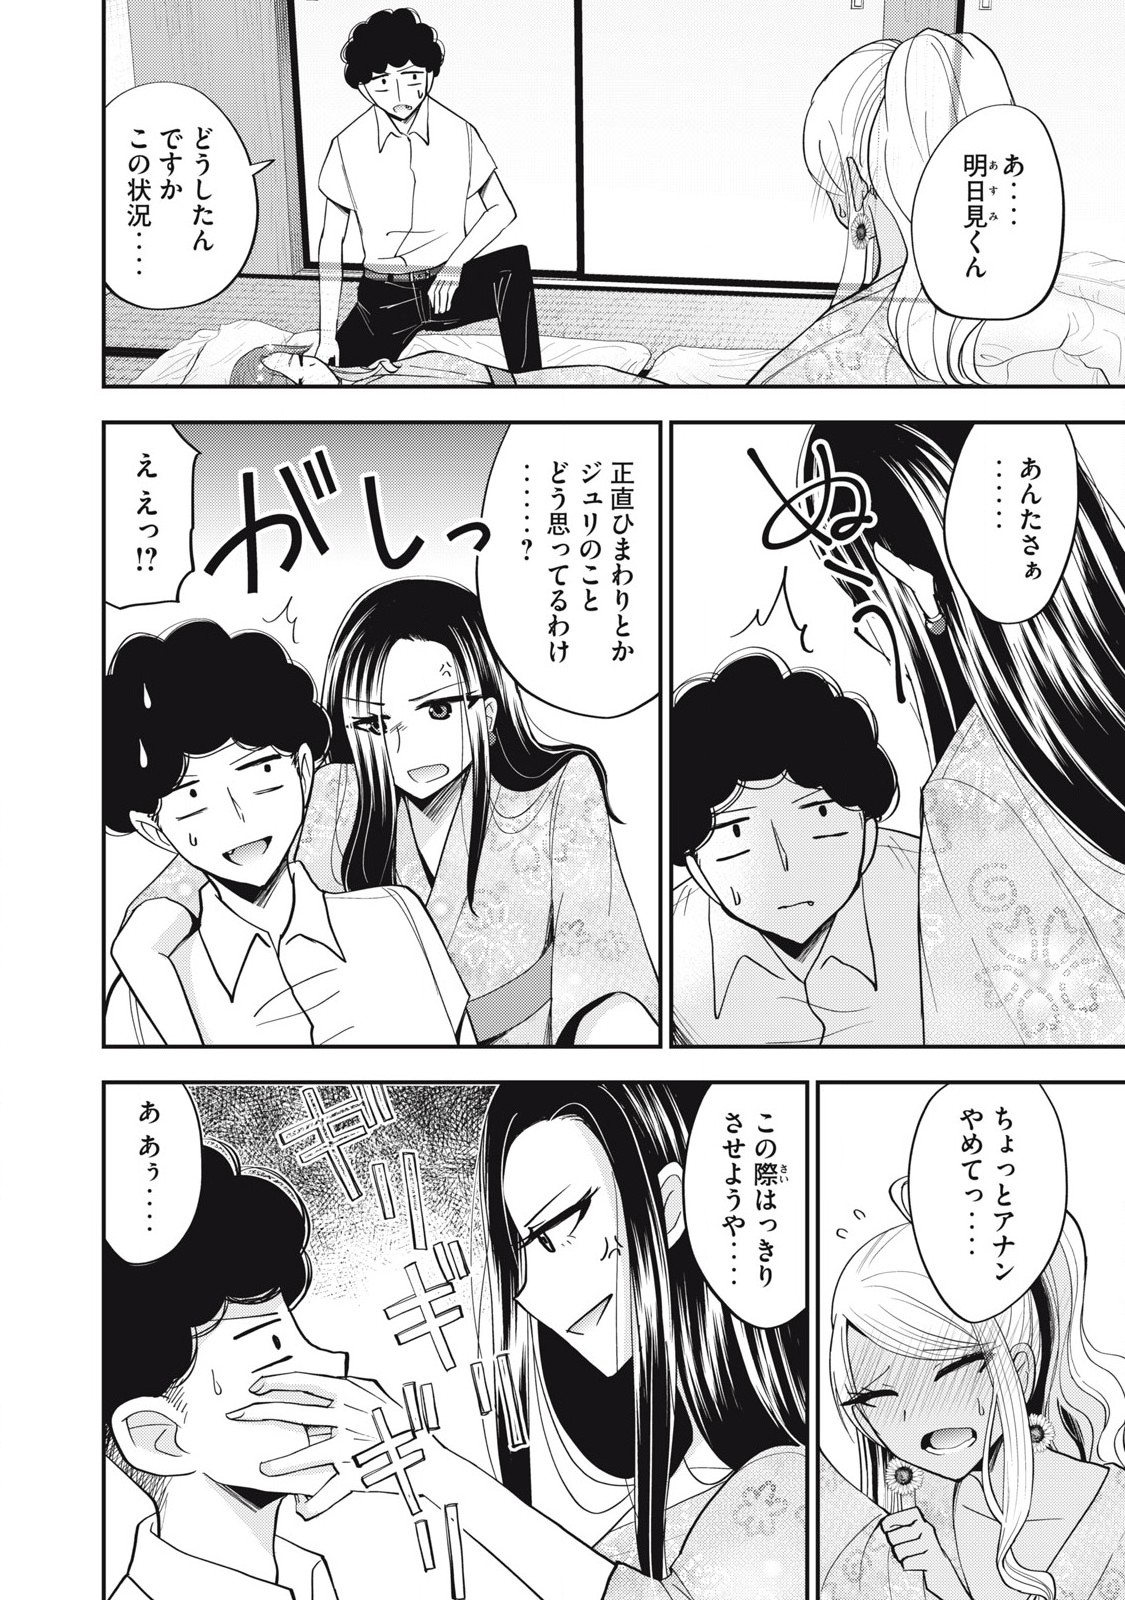 Yumeutsutsu no Hana no Sono - Chapter 29 - Page 4